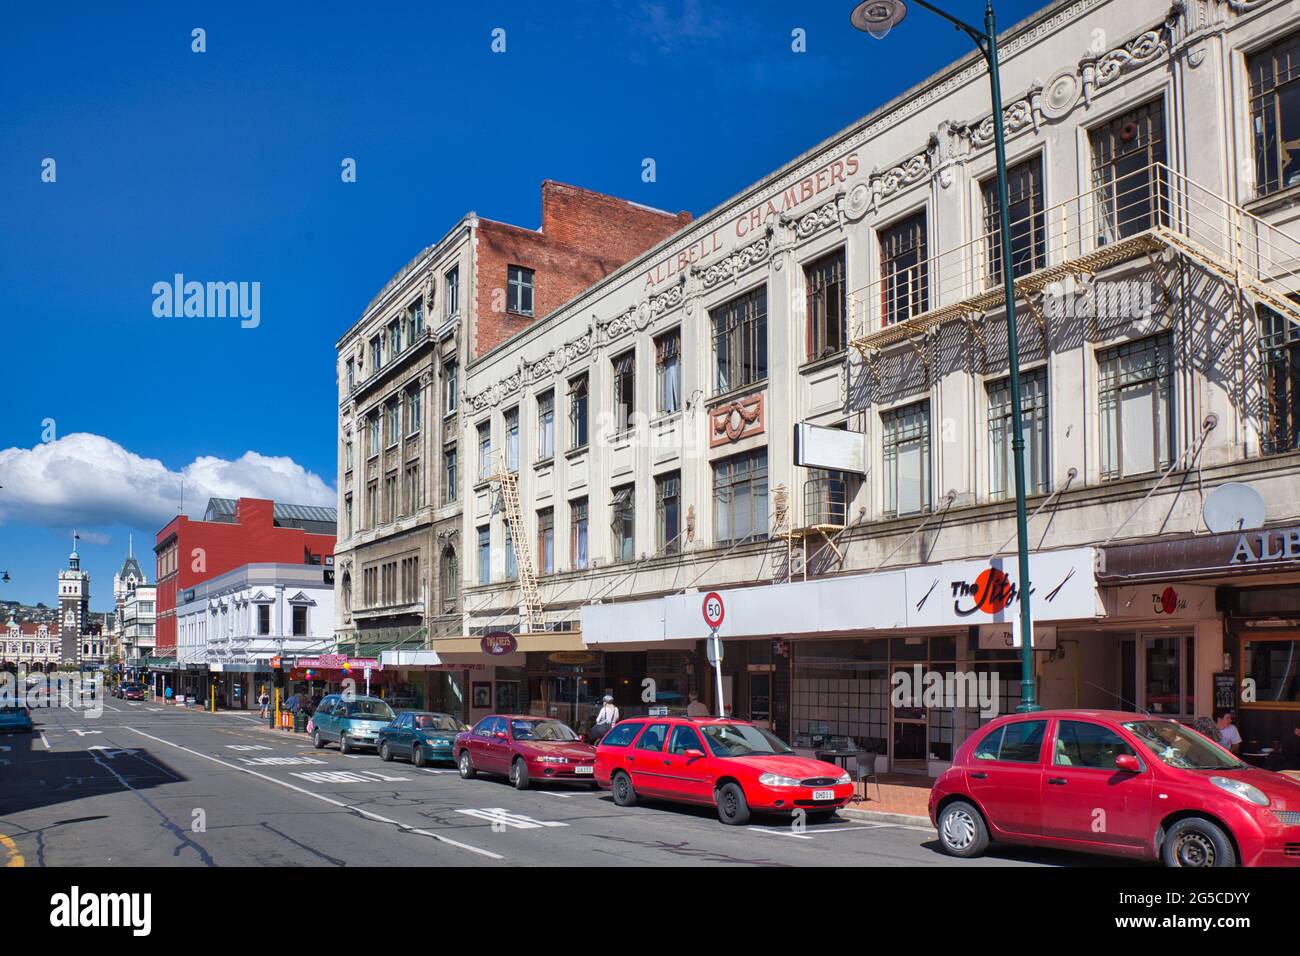 Scena di strada con negozi frontali e automobili che guardano verso la stazione ferroviaria in lontananza, a Dunedin, Isola del Sud, Nuova Zelanda Foto Stock